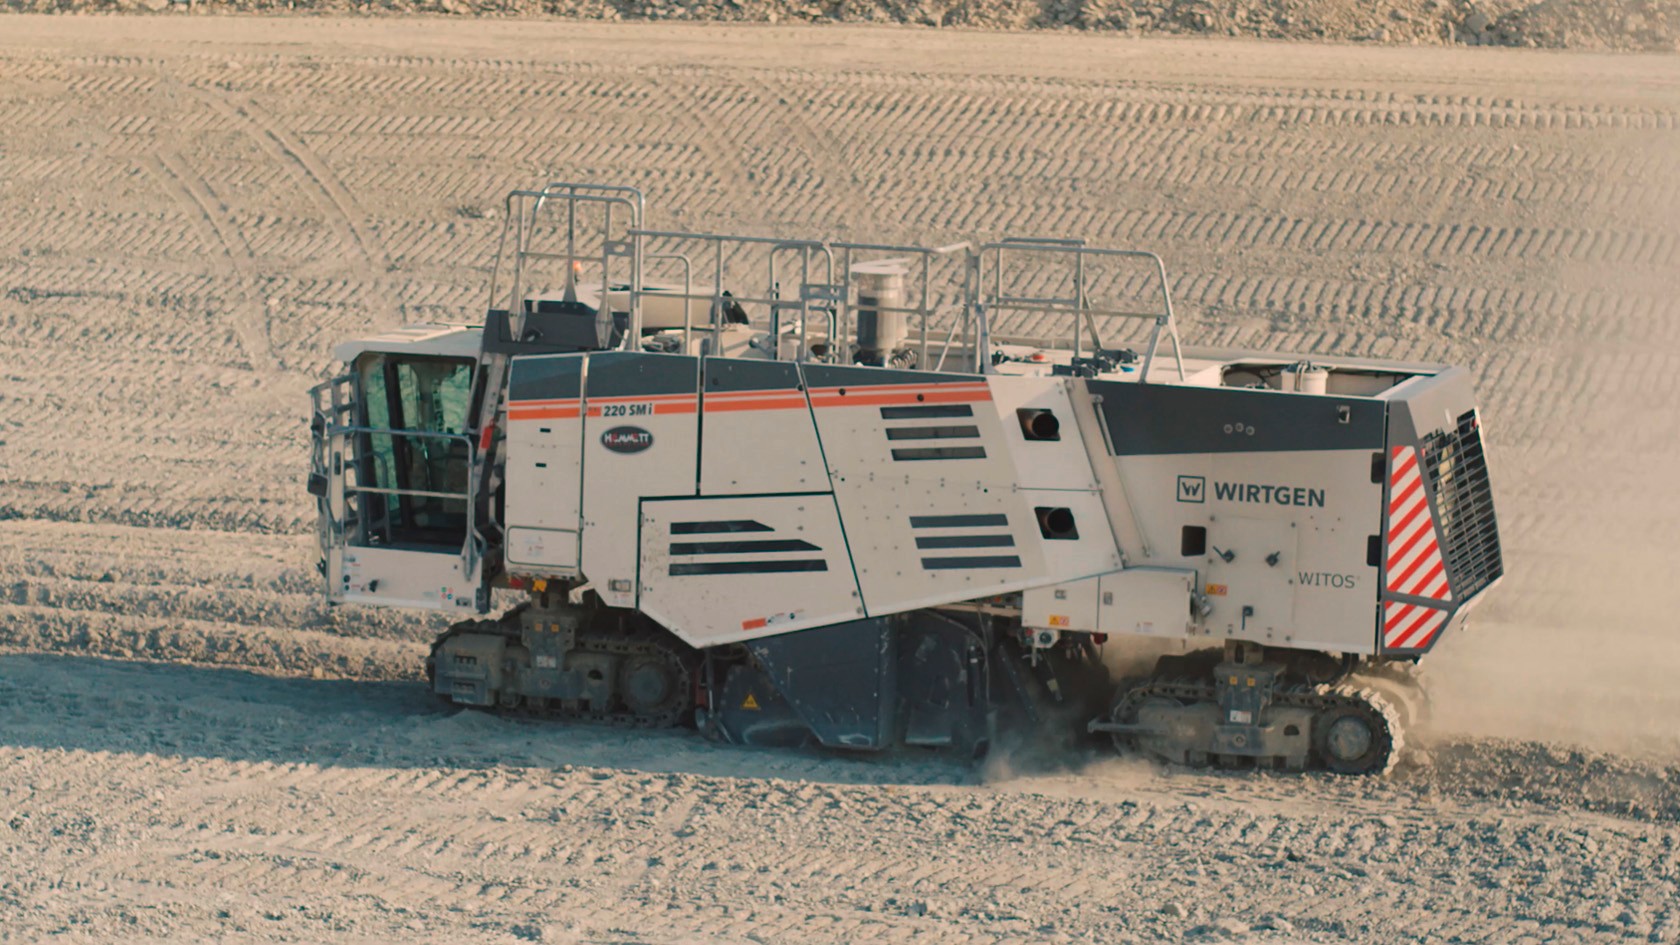  Surface Miner 220 SMI bei der Trassierung des Geländes